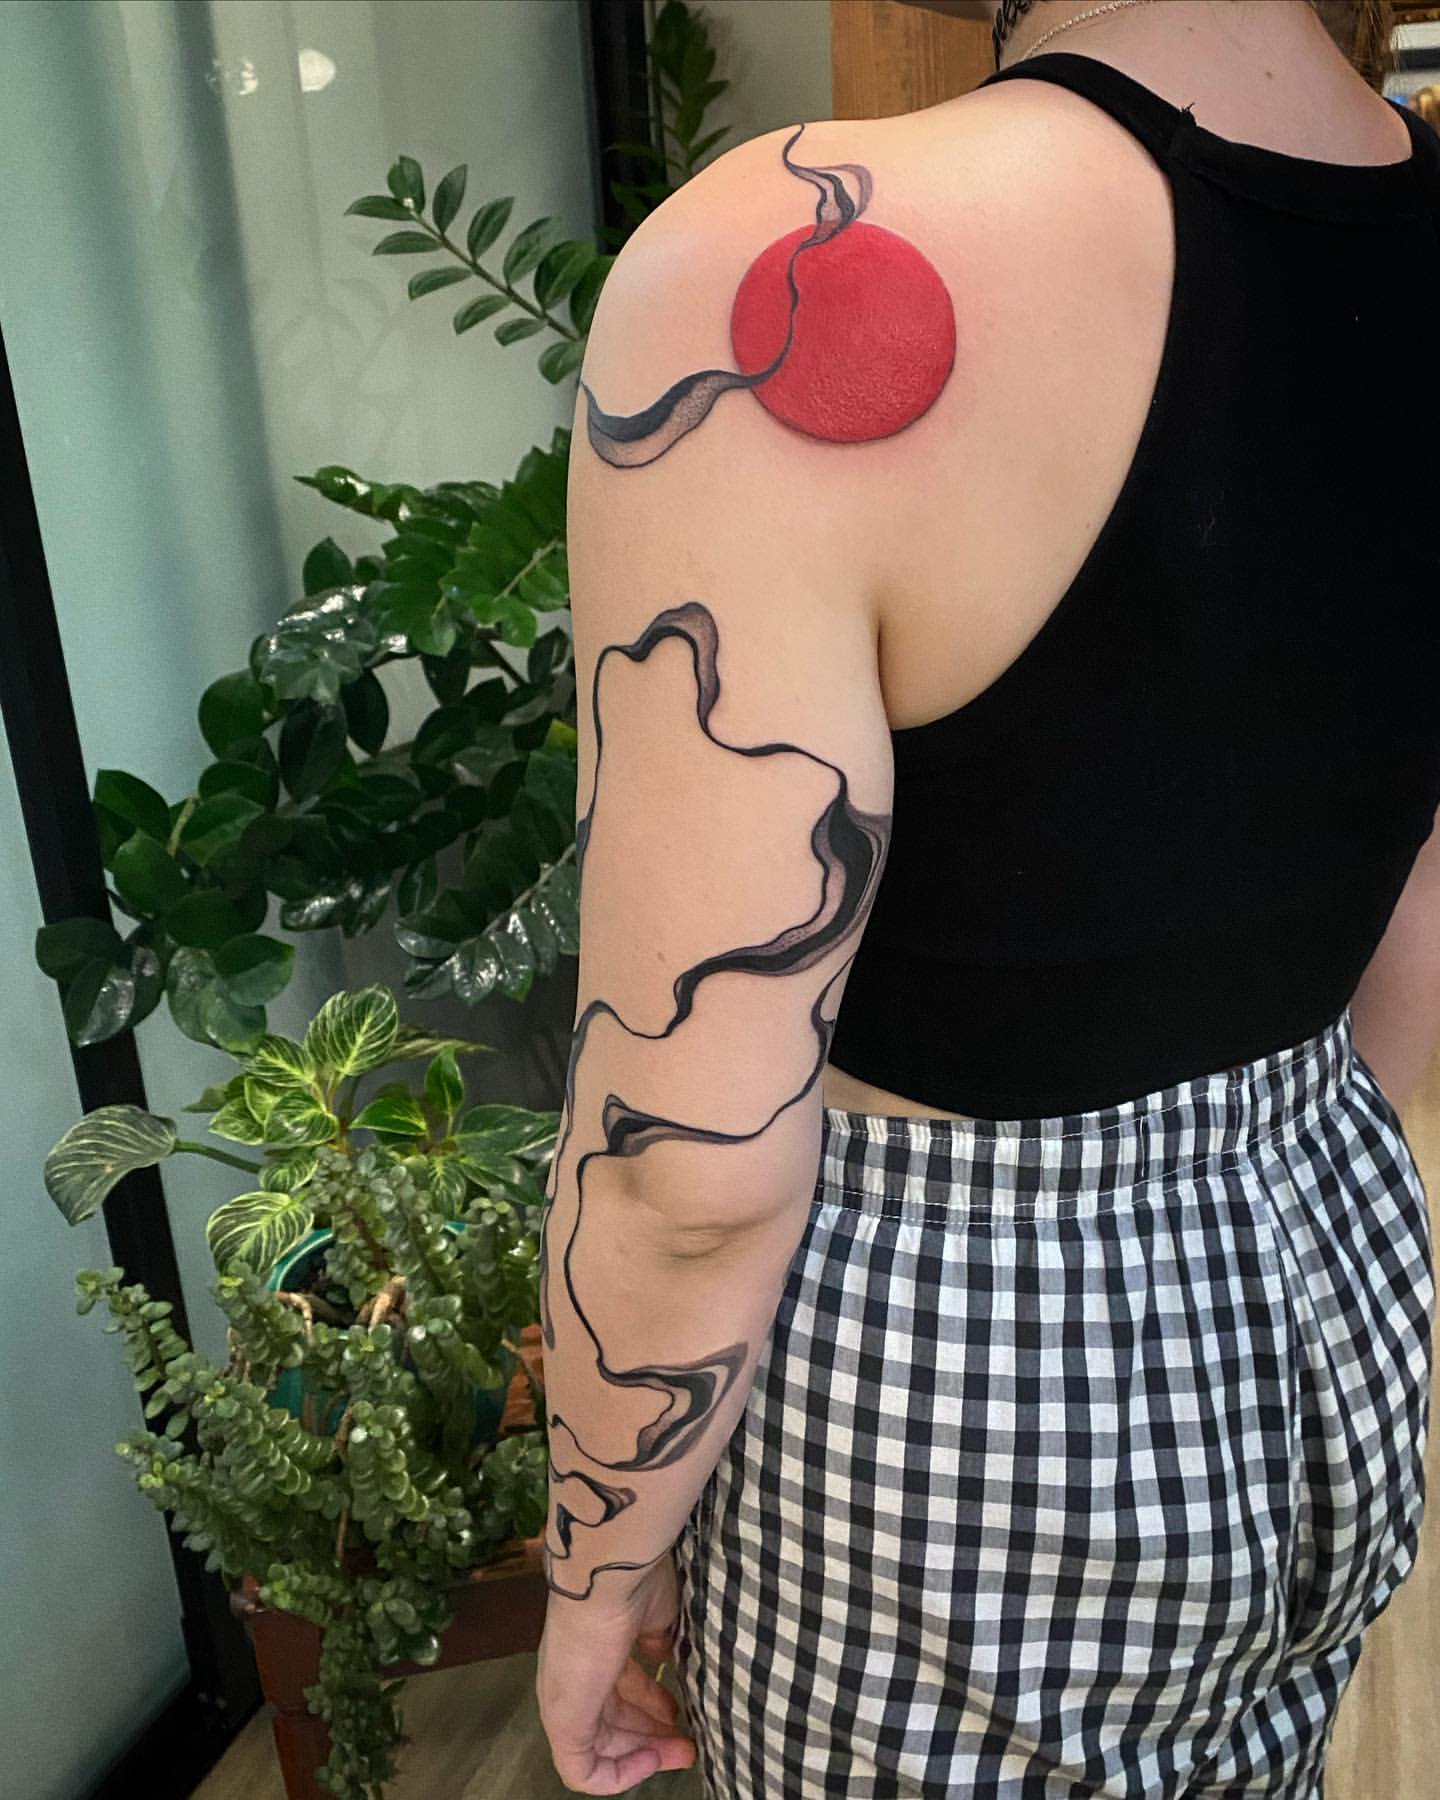 Sexy Tattoo Ideas For Women, Minimalist Tattoo